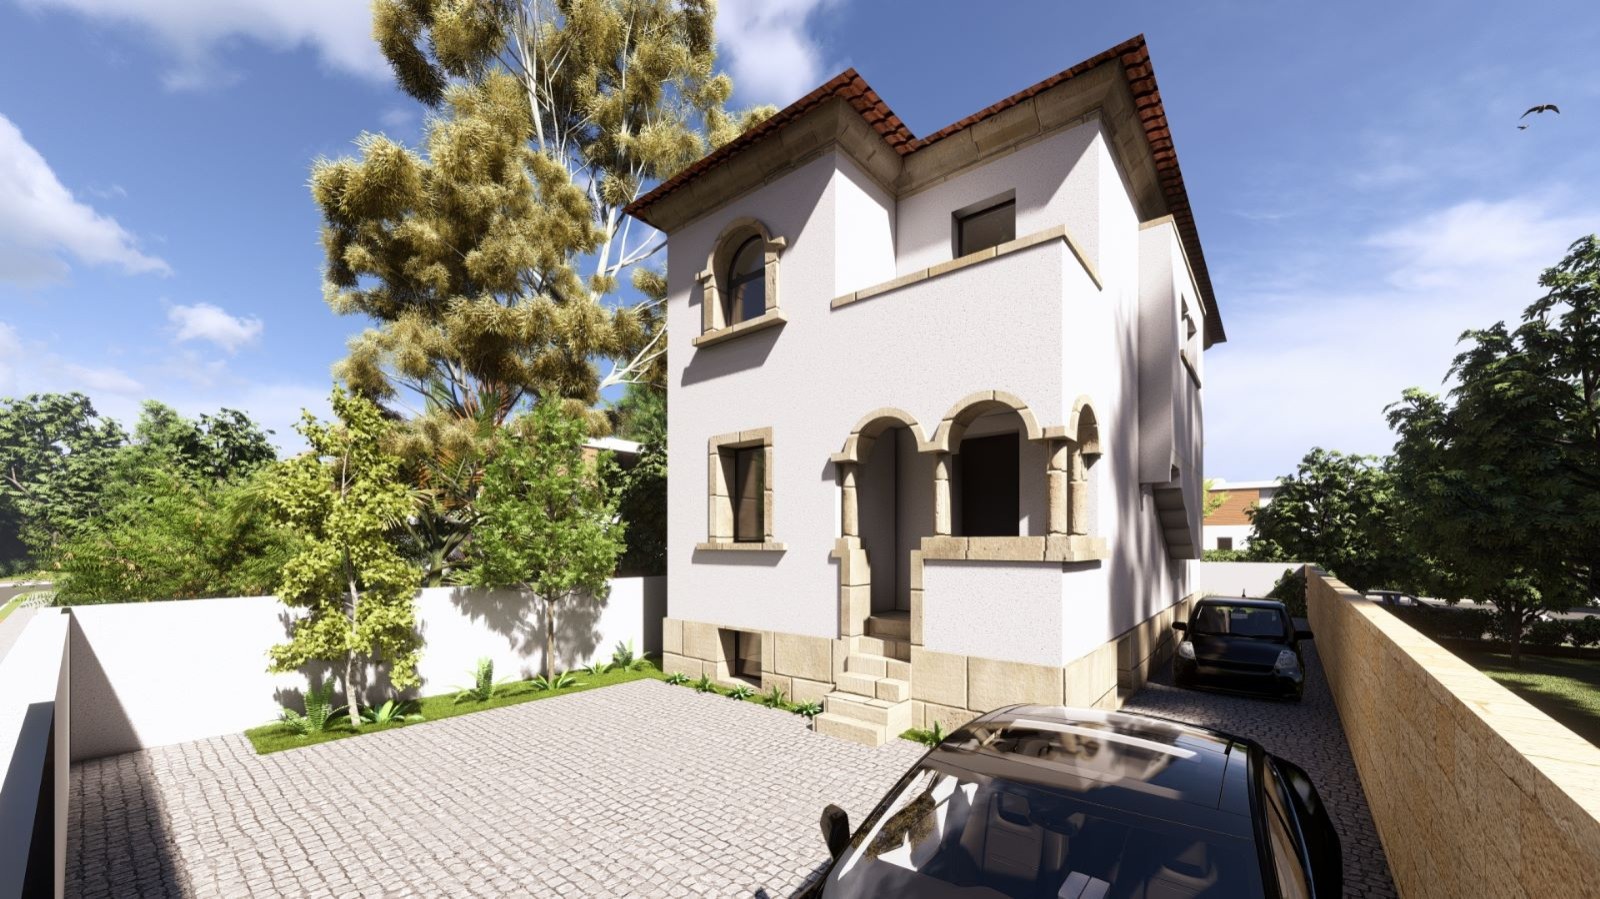 4 bedroom house - undergoing renovation, for sale - Serralves - Porto_238680